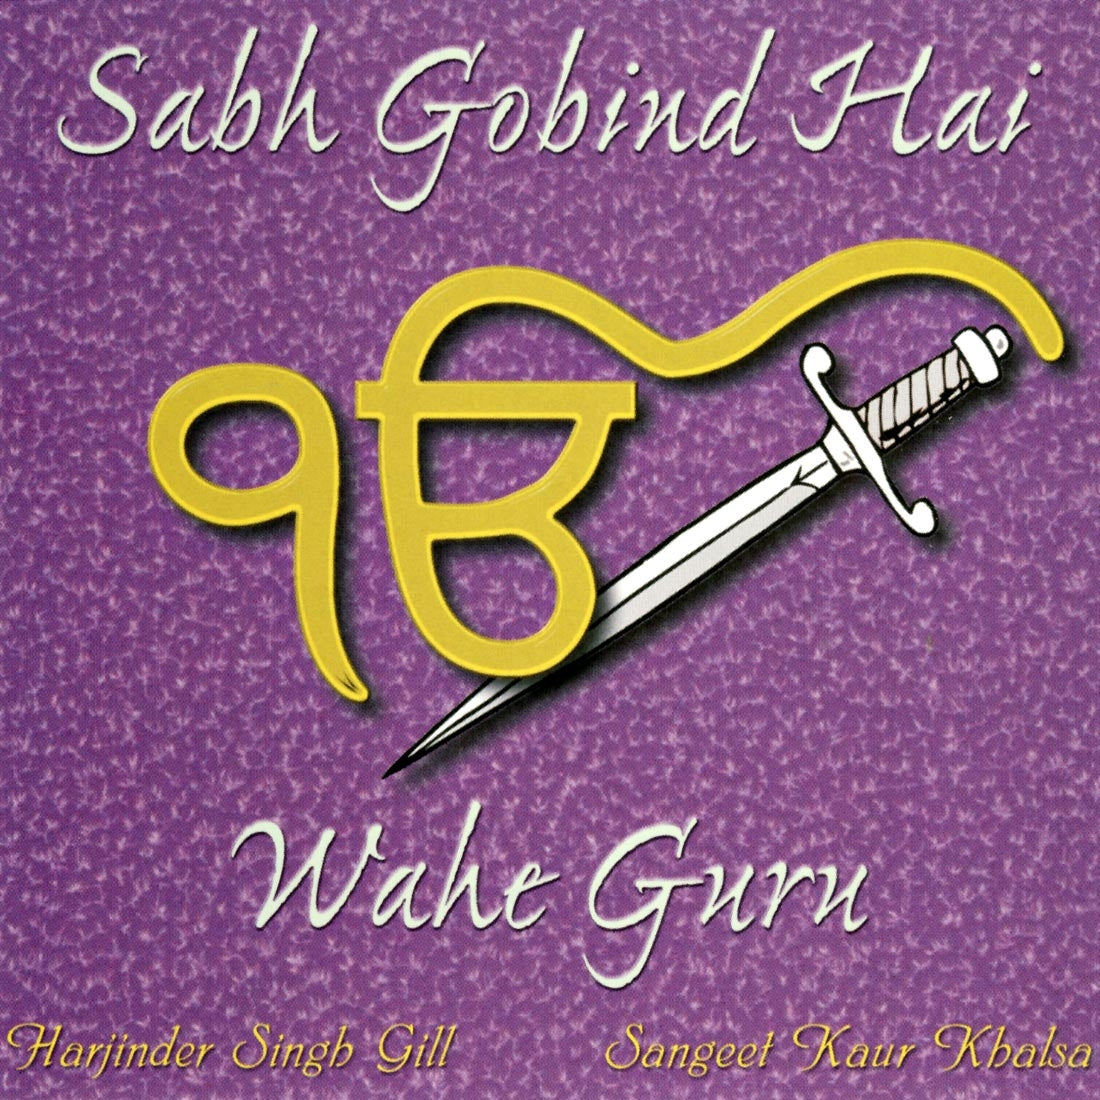 Sabh Gobind Hai - Sangeet Kaur komplett